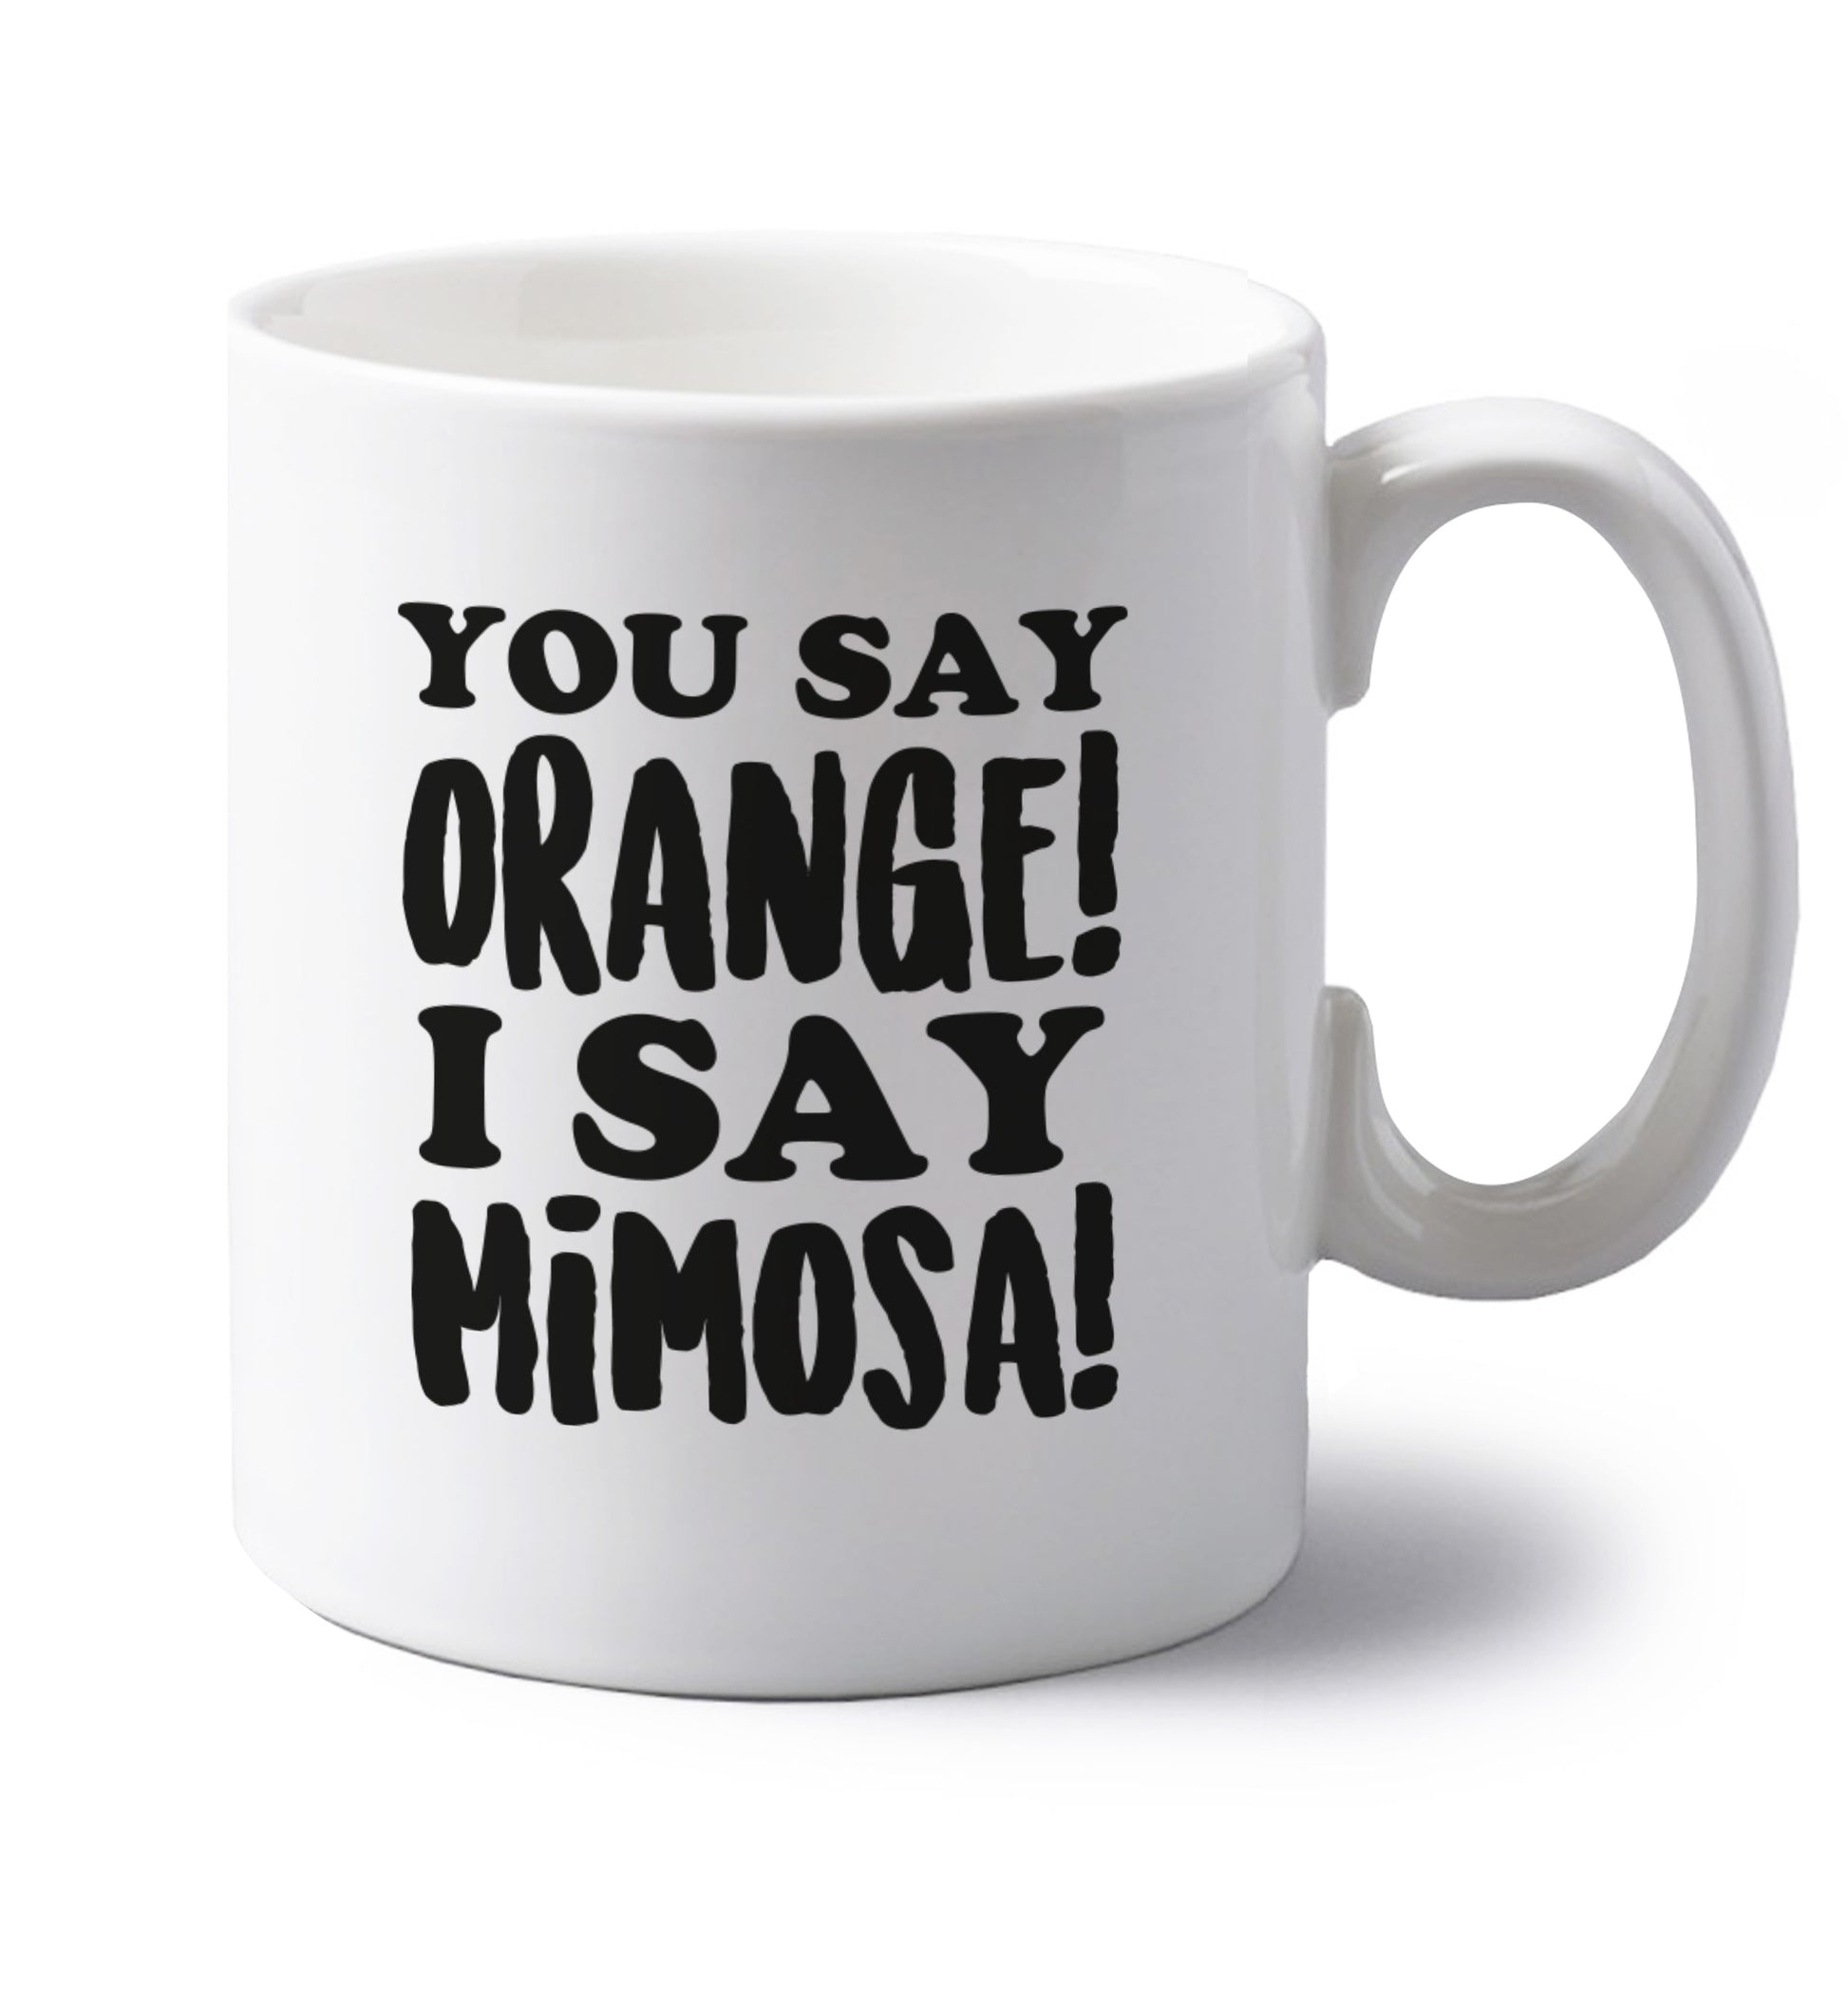 You say orange I say mimosa! left handed white ceramic mug 